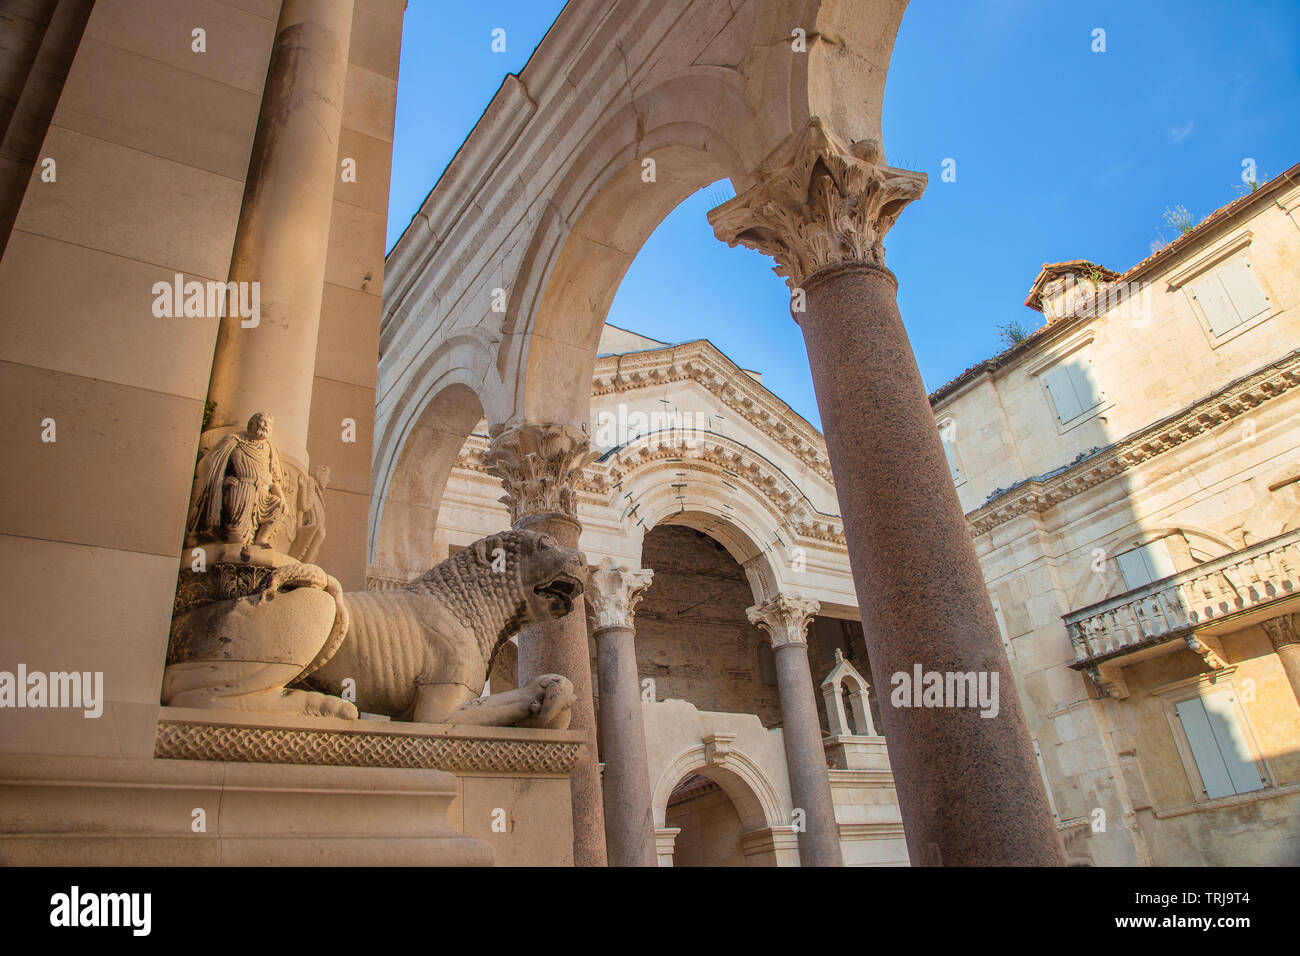 Split, Croatie, ou à l'intérieur du péristyle du palais de Dioclétien peristil dans la vieille ville, des statues de lions en pierre et des arches de l'époque romaine antique Banque D'Images